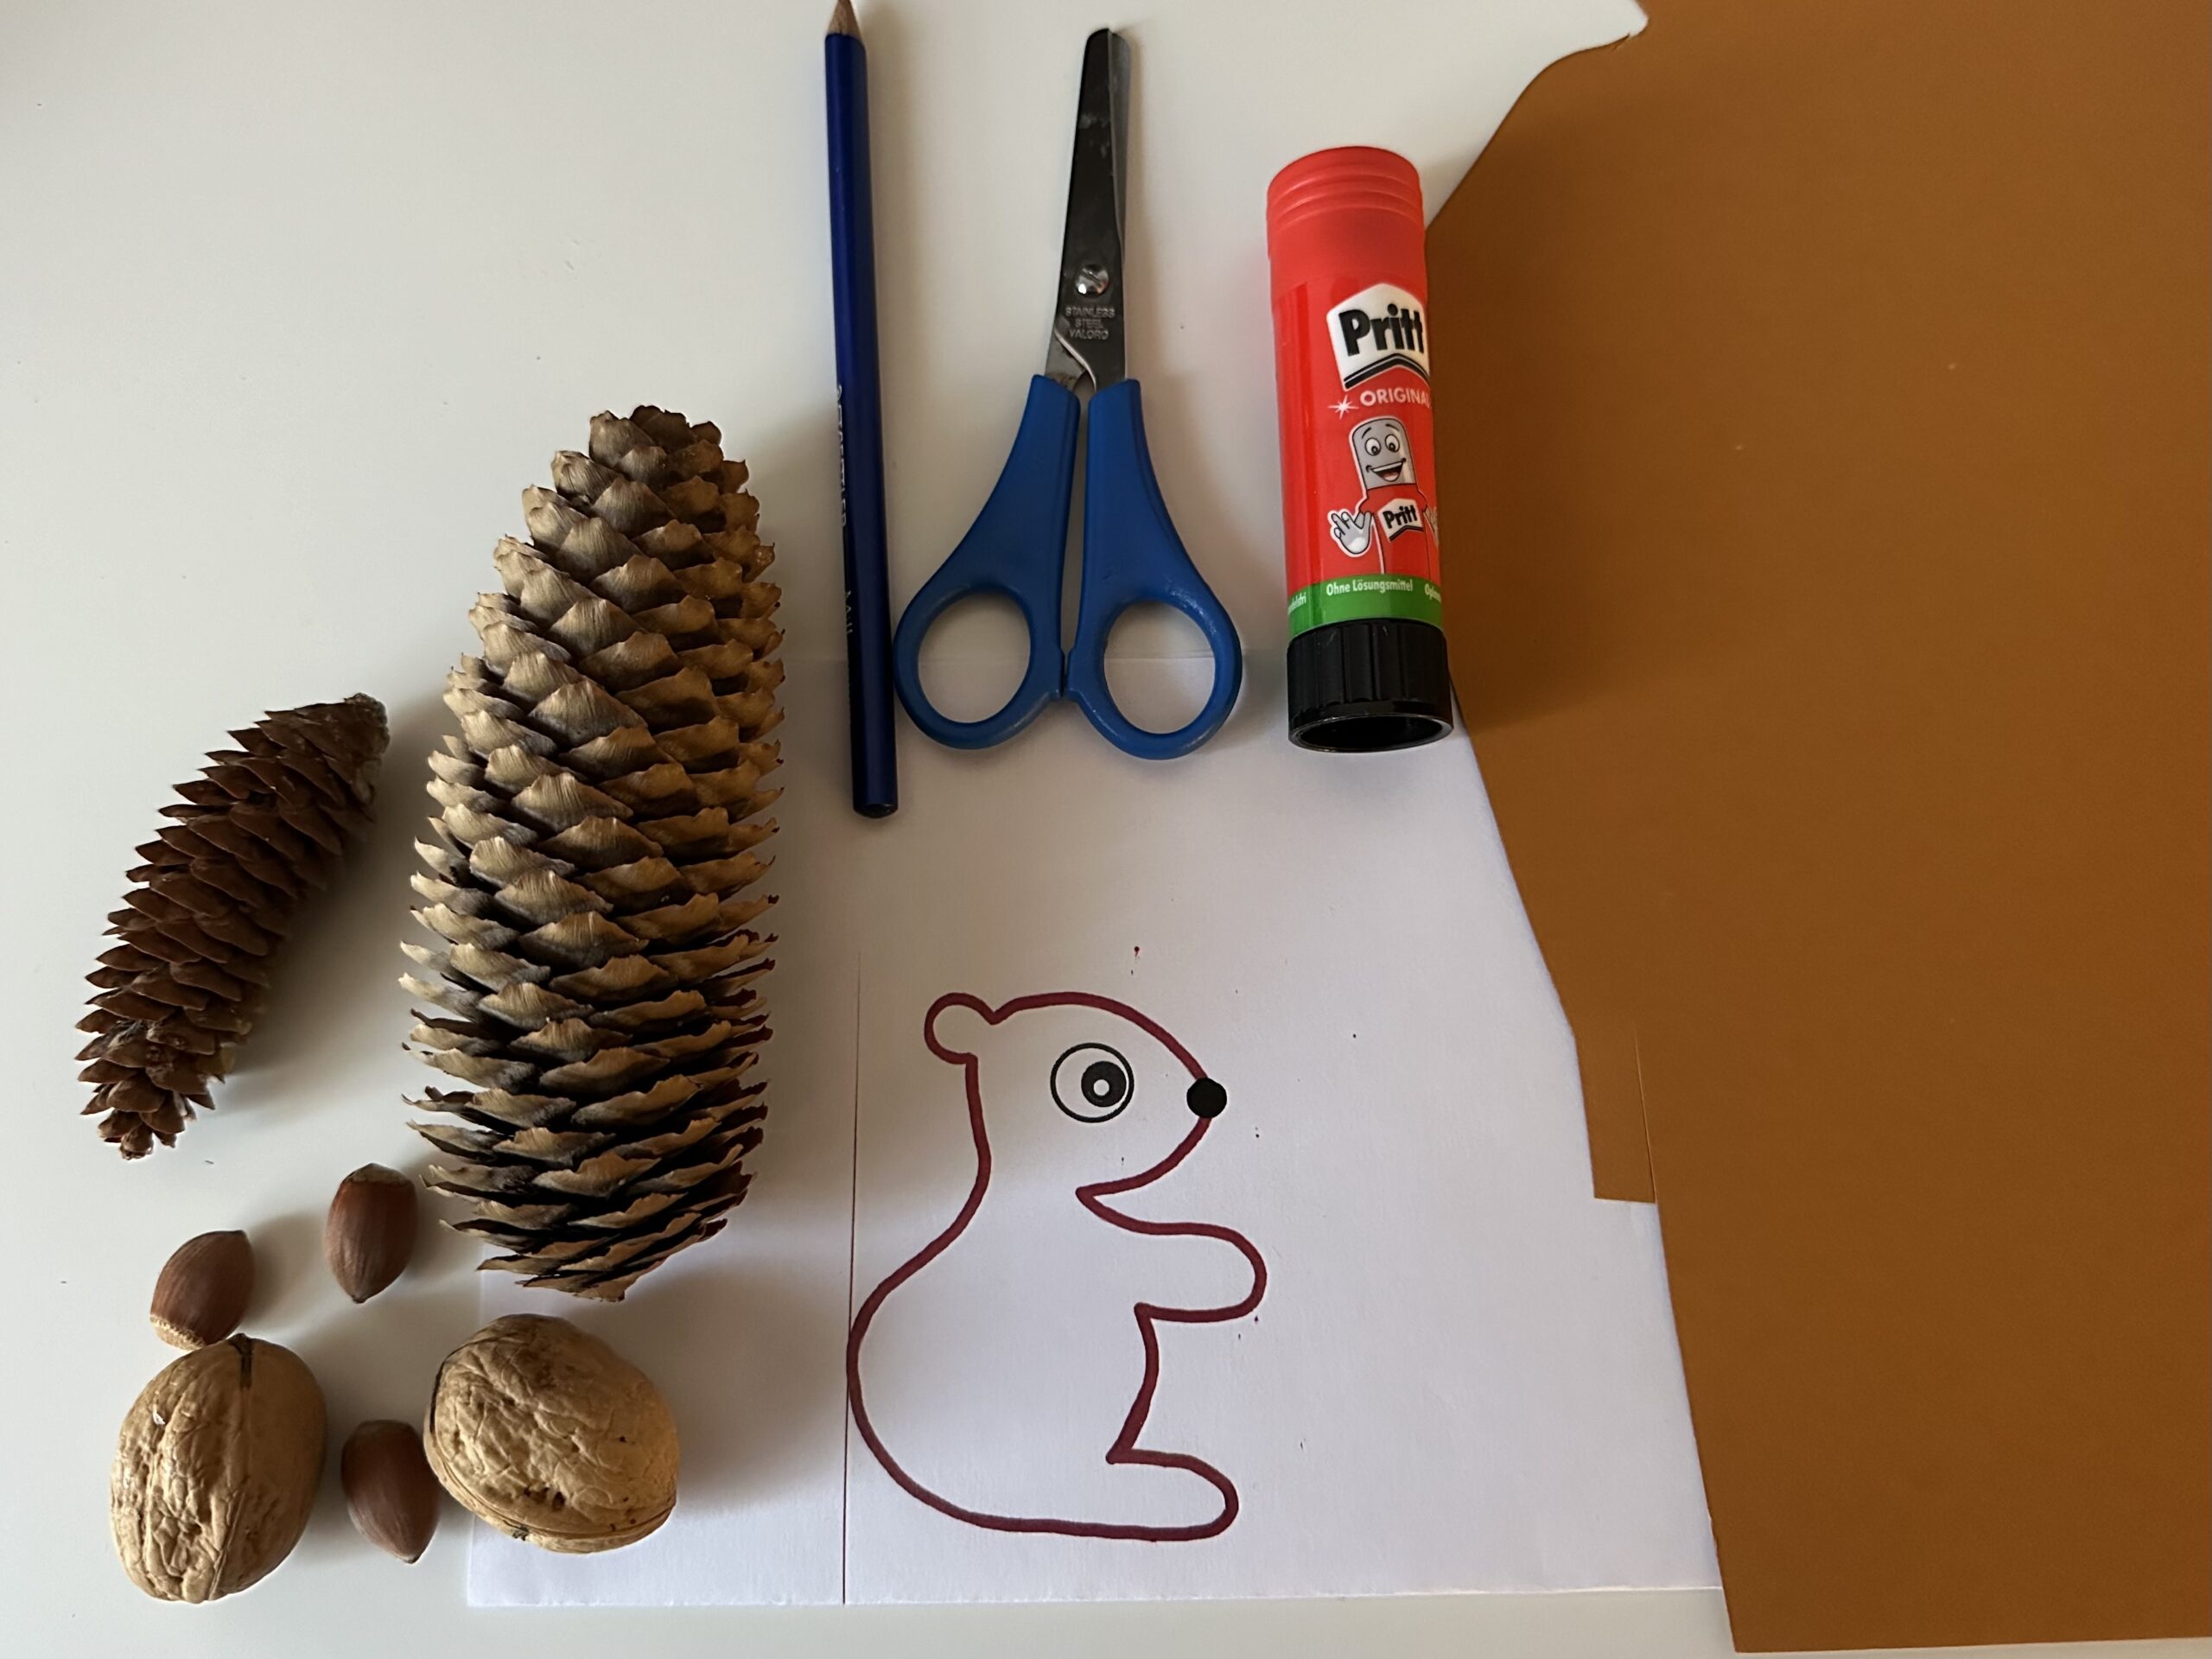 Bild zum Schritt 1 für das Bastel- und DIY-Abenteuer für Kinder: 'Legt alle Bastelmaterialien zurecht, und breitet eure Bastelunterlage aus.'